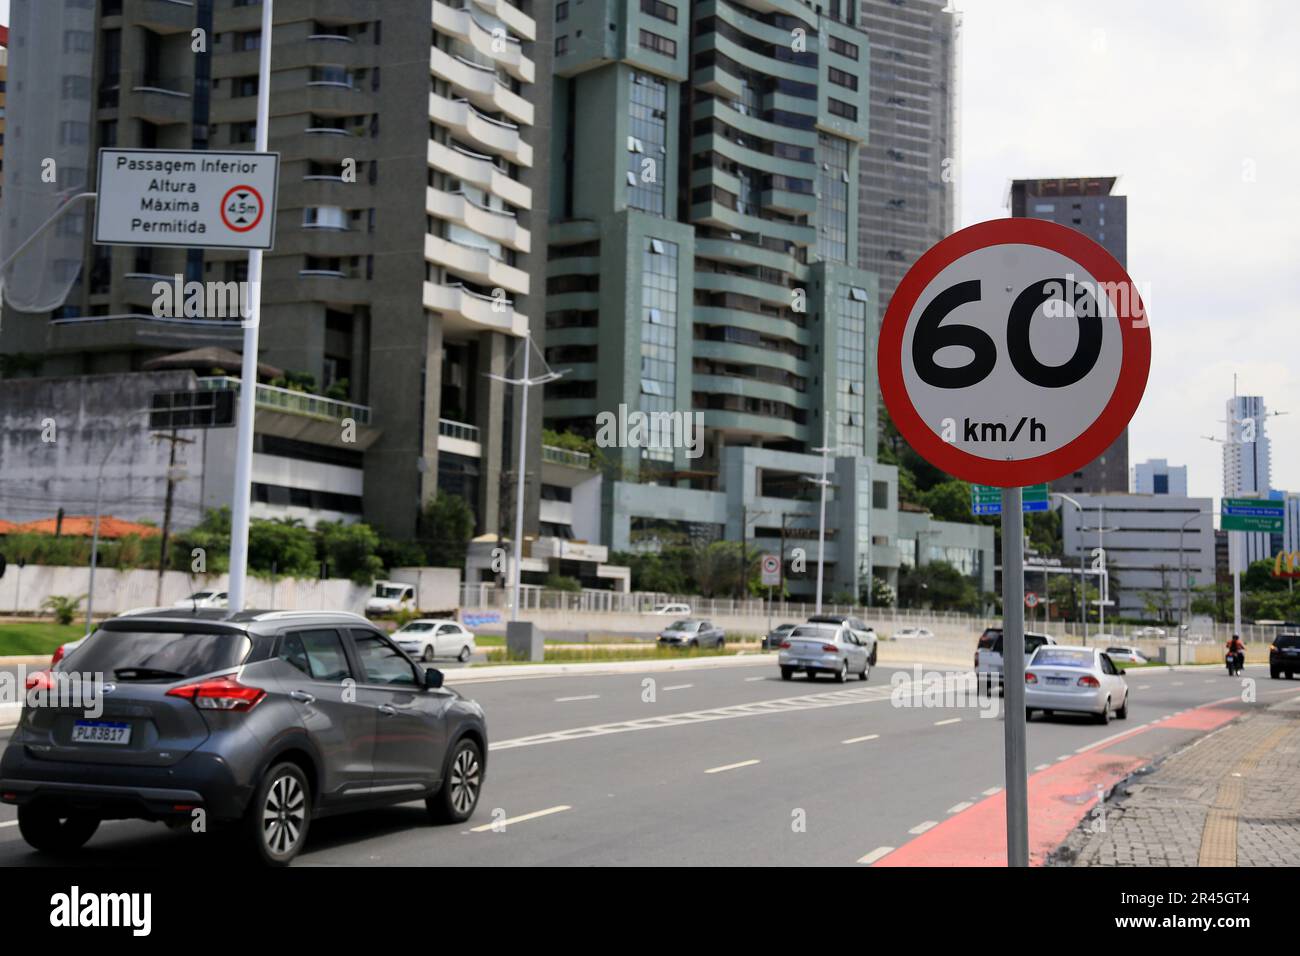 salvador, bahia, brasilien - 16. Mai 2023: Verkehrsschild zeigt Geschwindigkeitsbegrenzung von 60 km/h auf der Straße in der Stadt Salvador an. Stockfoto